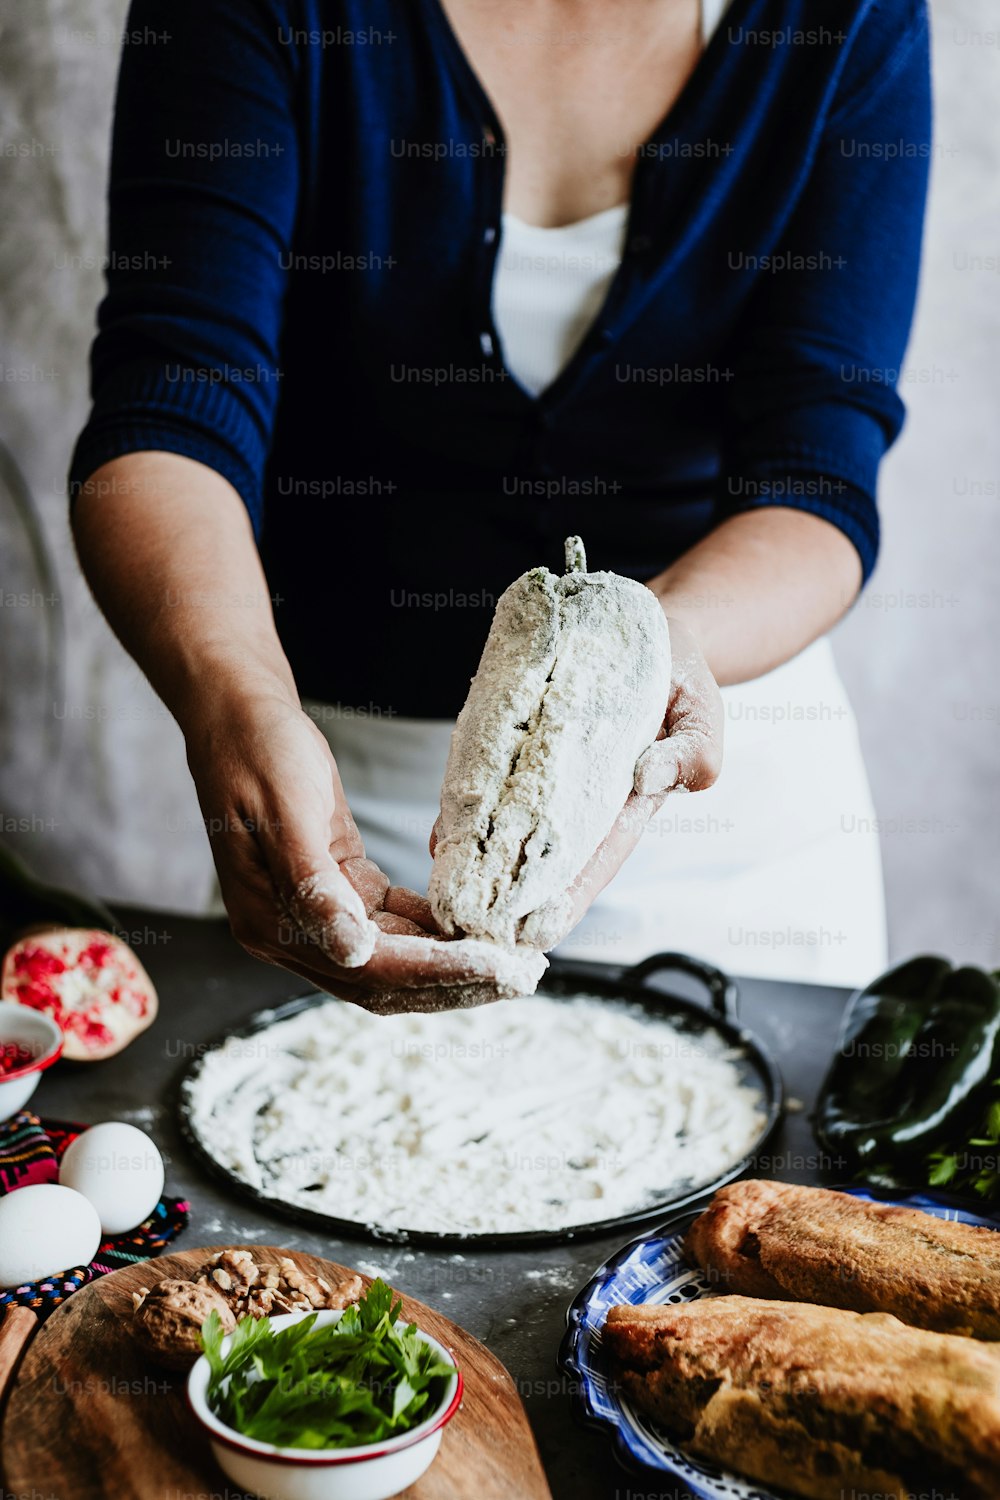 cozinhar chiles mexicanos batidos en nogada receita por mãos de mulher com pimenta Poblano e ingredientes, prato tradicional no México